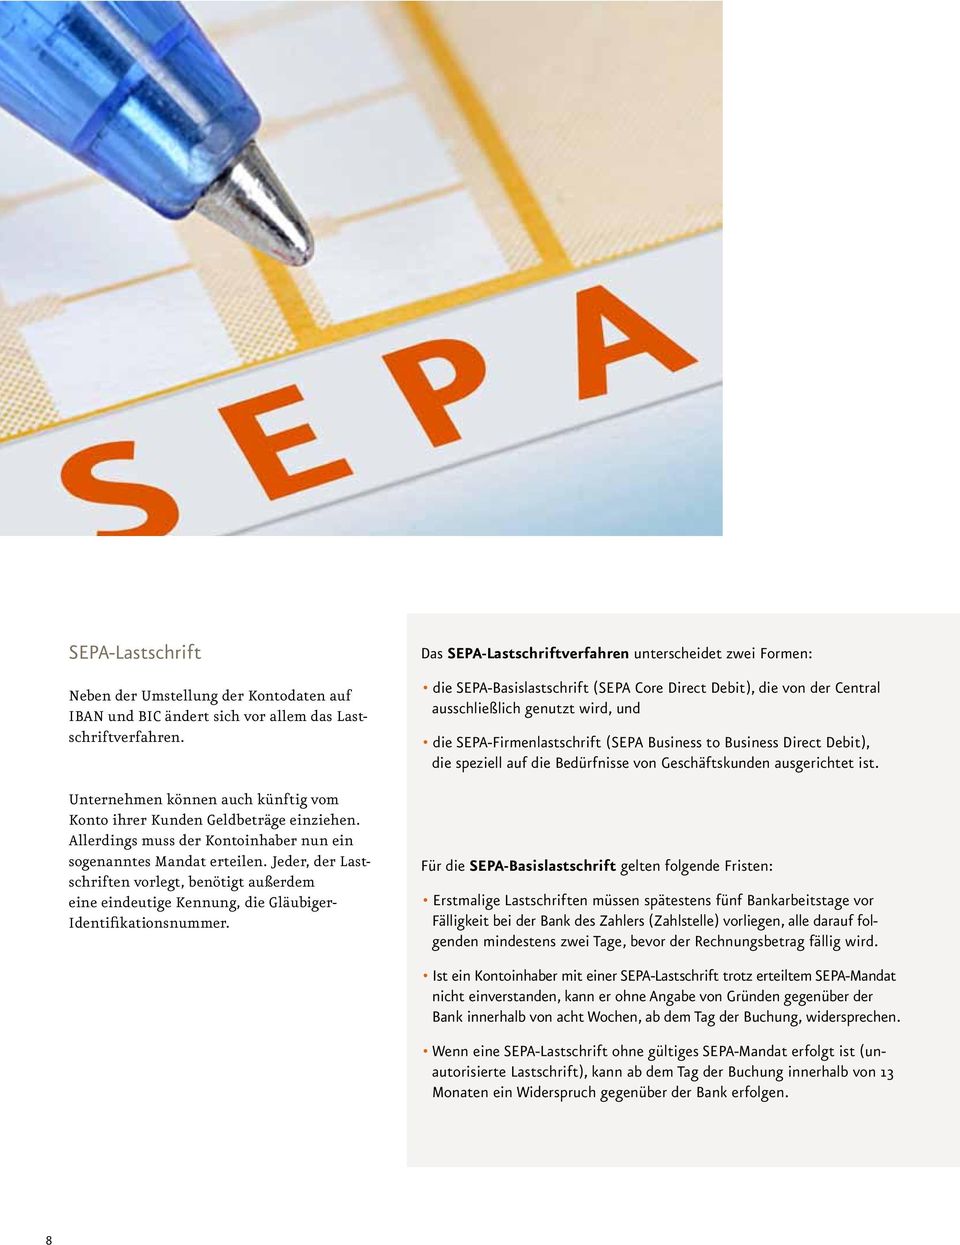 Das SEPA-Lastschriftverfahren unterscheidet zwei Formen: die SEPA-Basislastschrift (SEPA Core Direct Debit), die von der Central ausschließlich genutzt wird, und die SEPA-Firmenlastschrift (SEPA